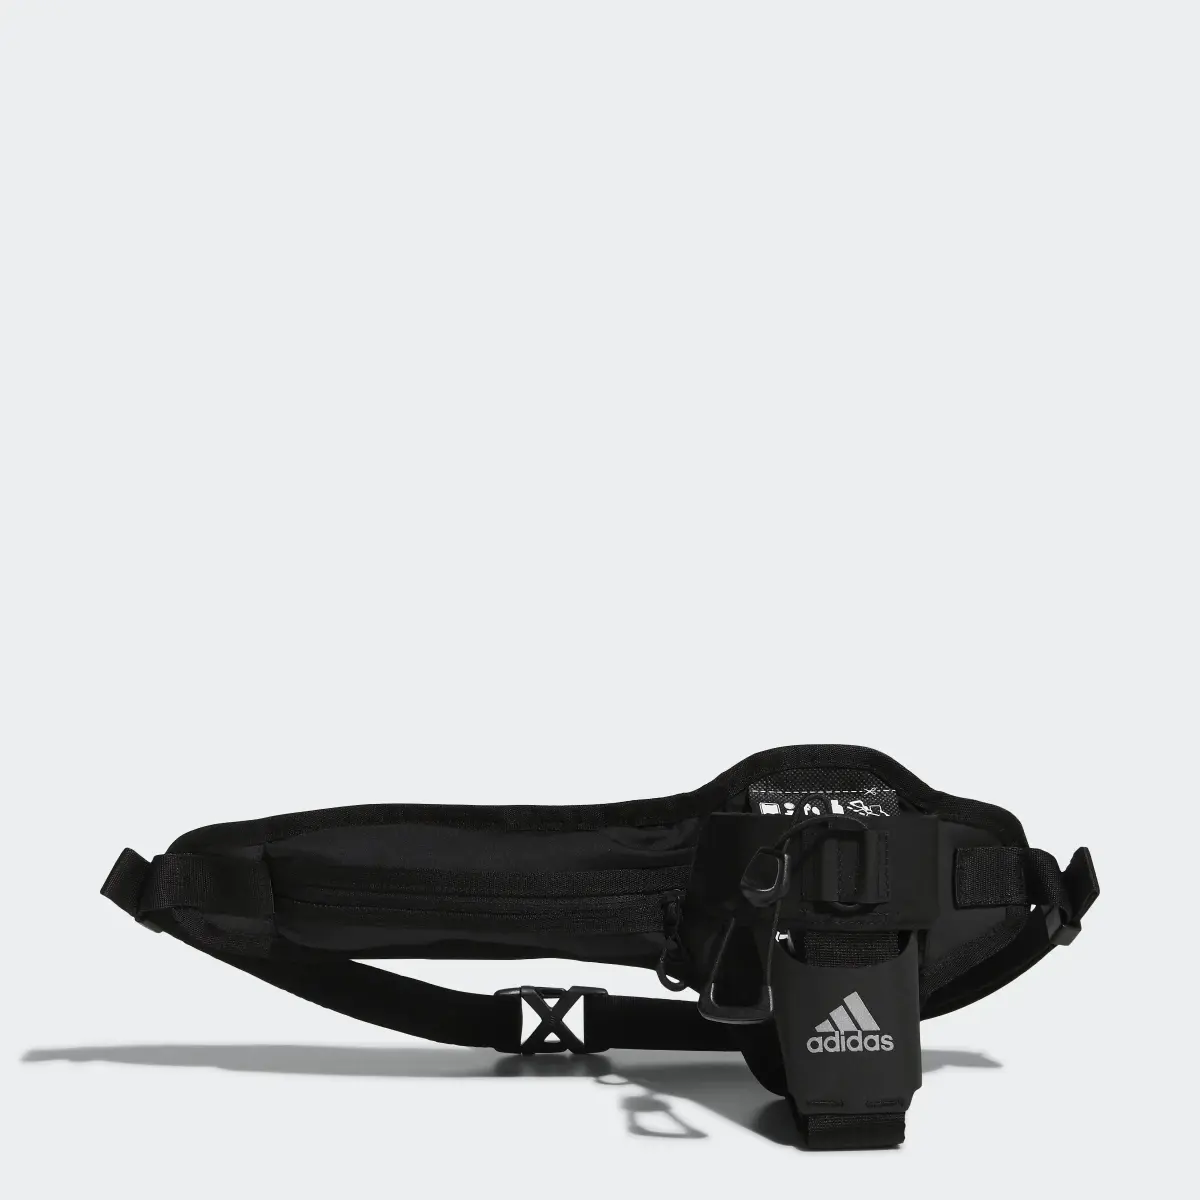 Adidas Running Gear Bottle Bag. 1